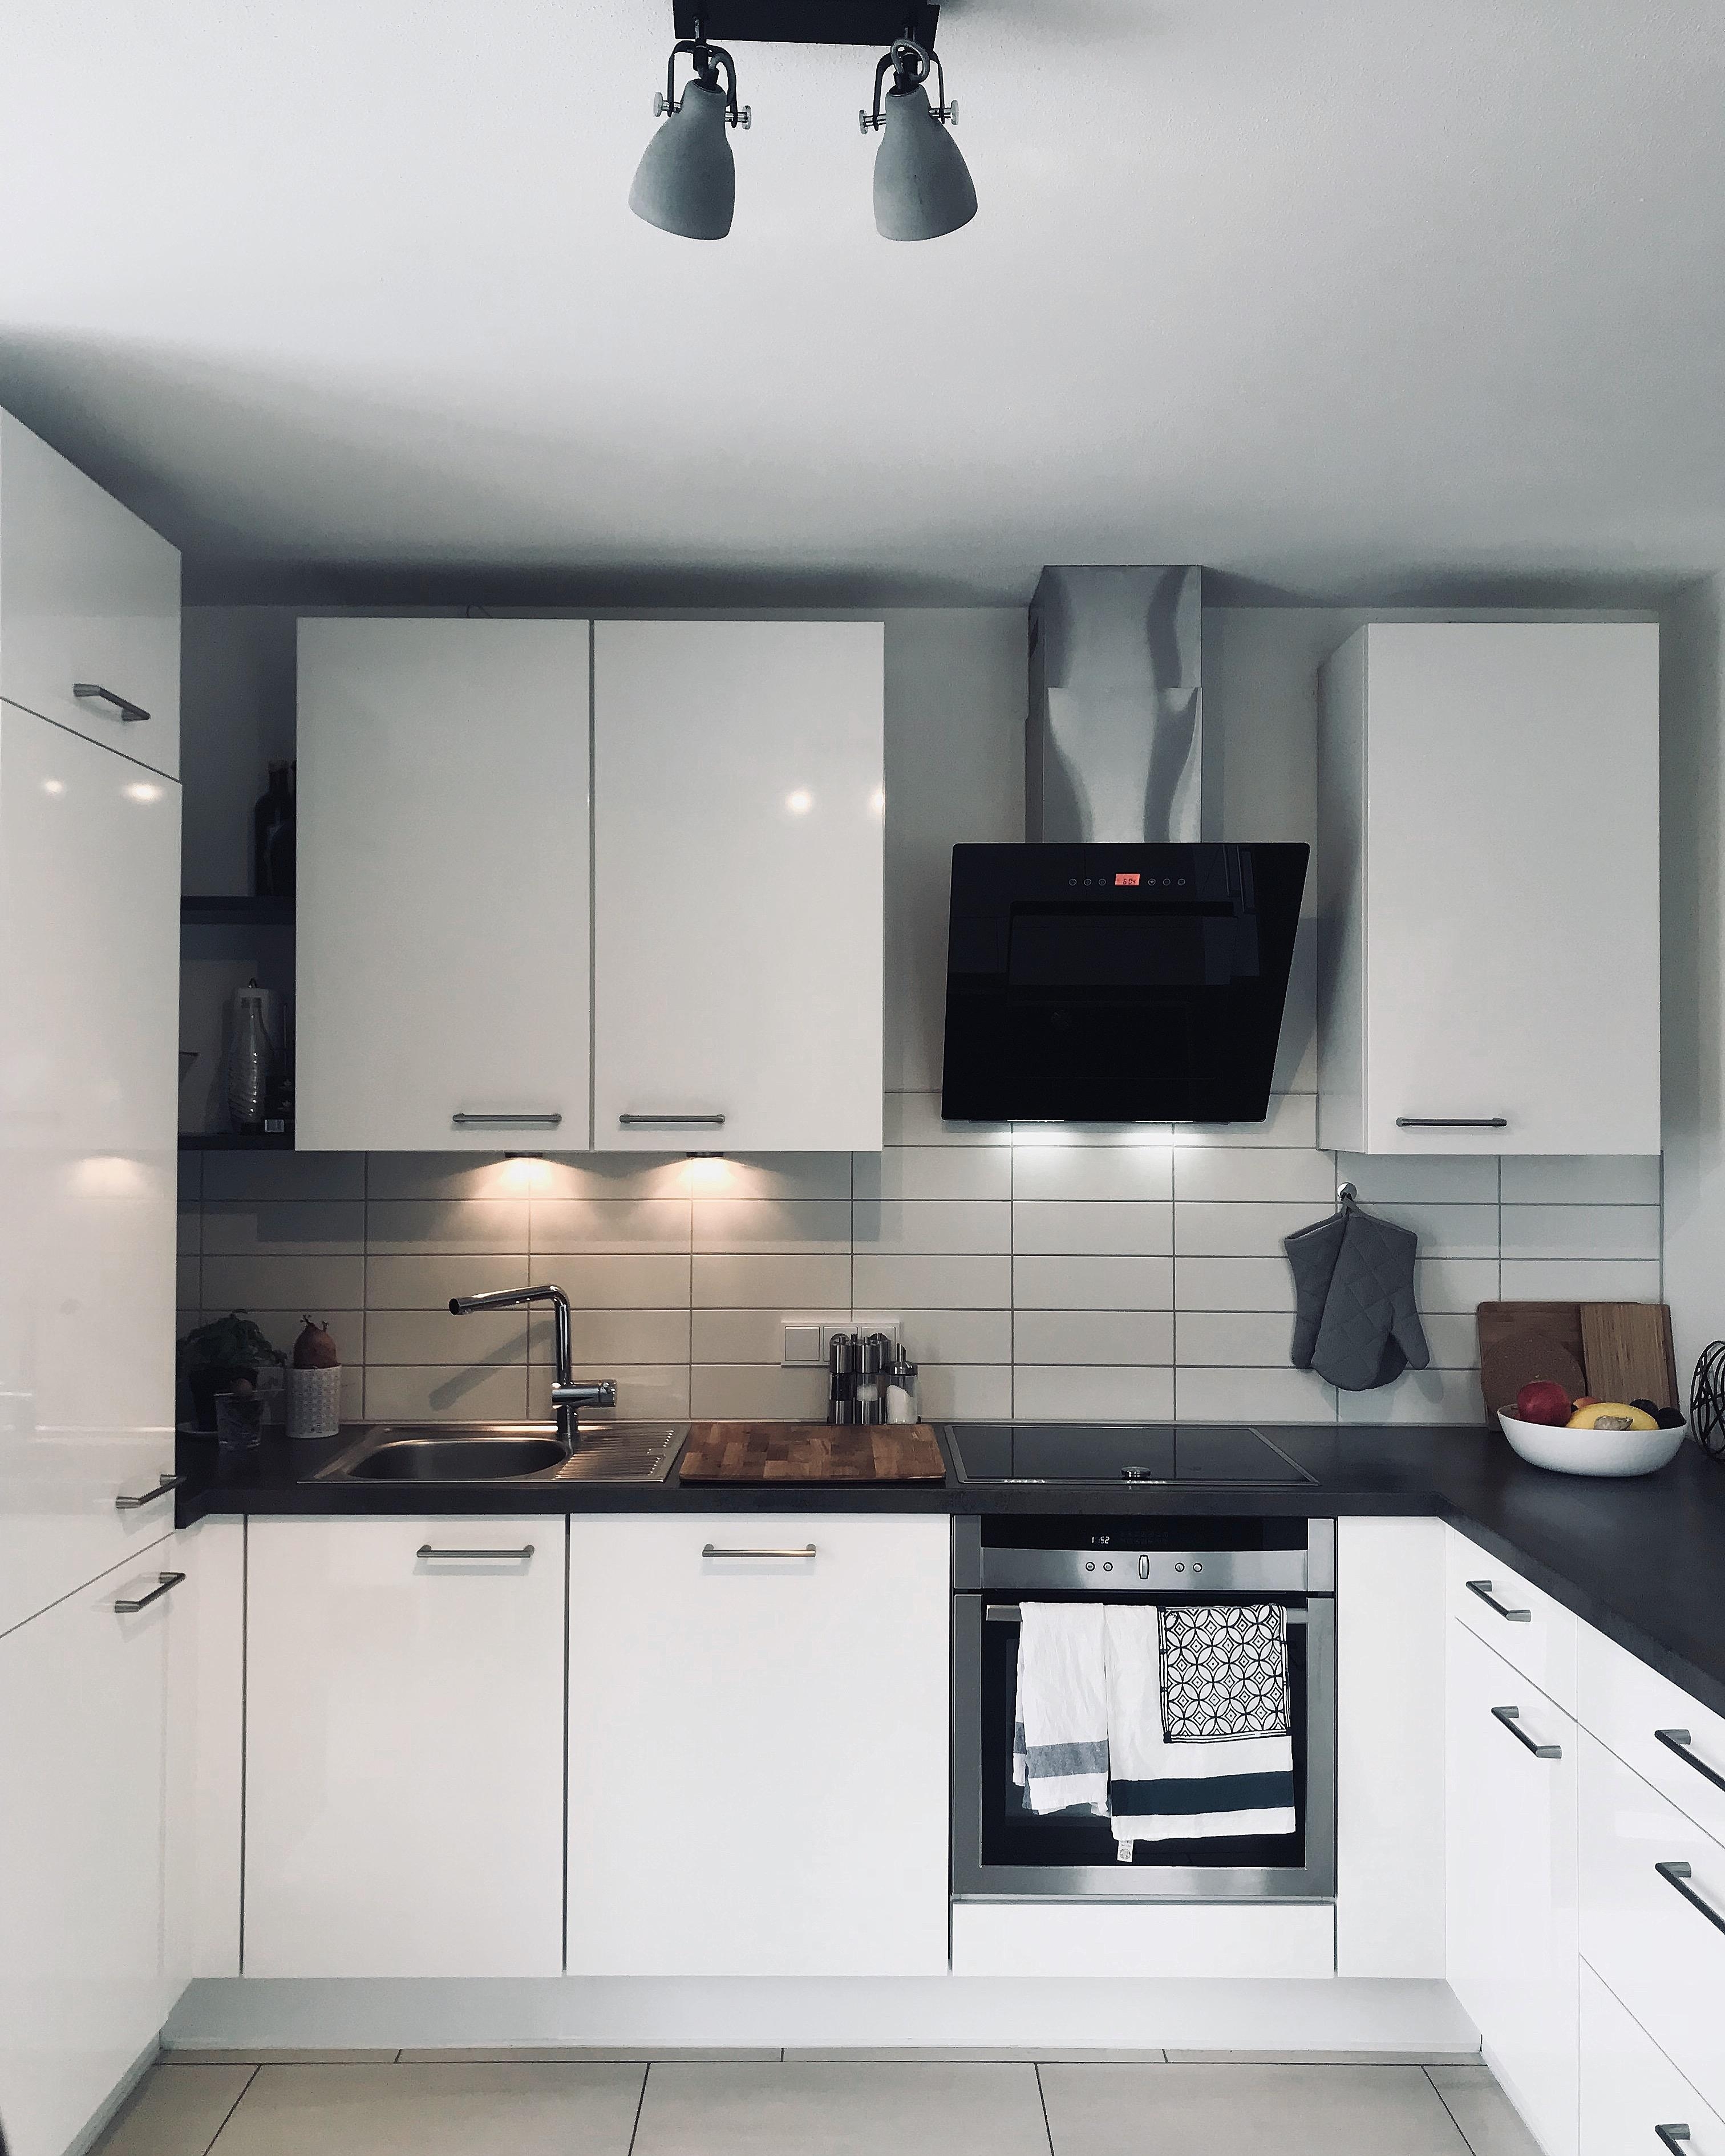 Küchenliebe 🙌🏻 #scandi #couchstyle #kitchenlove #whitekitchen